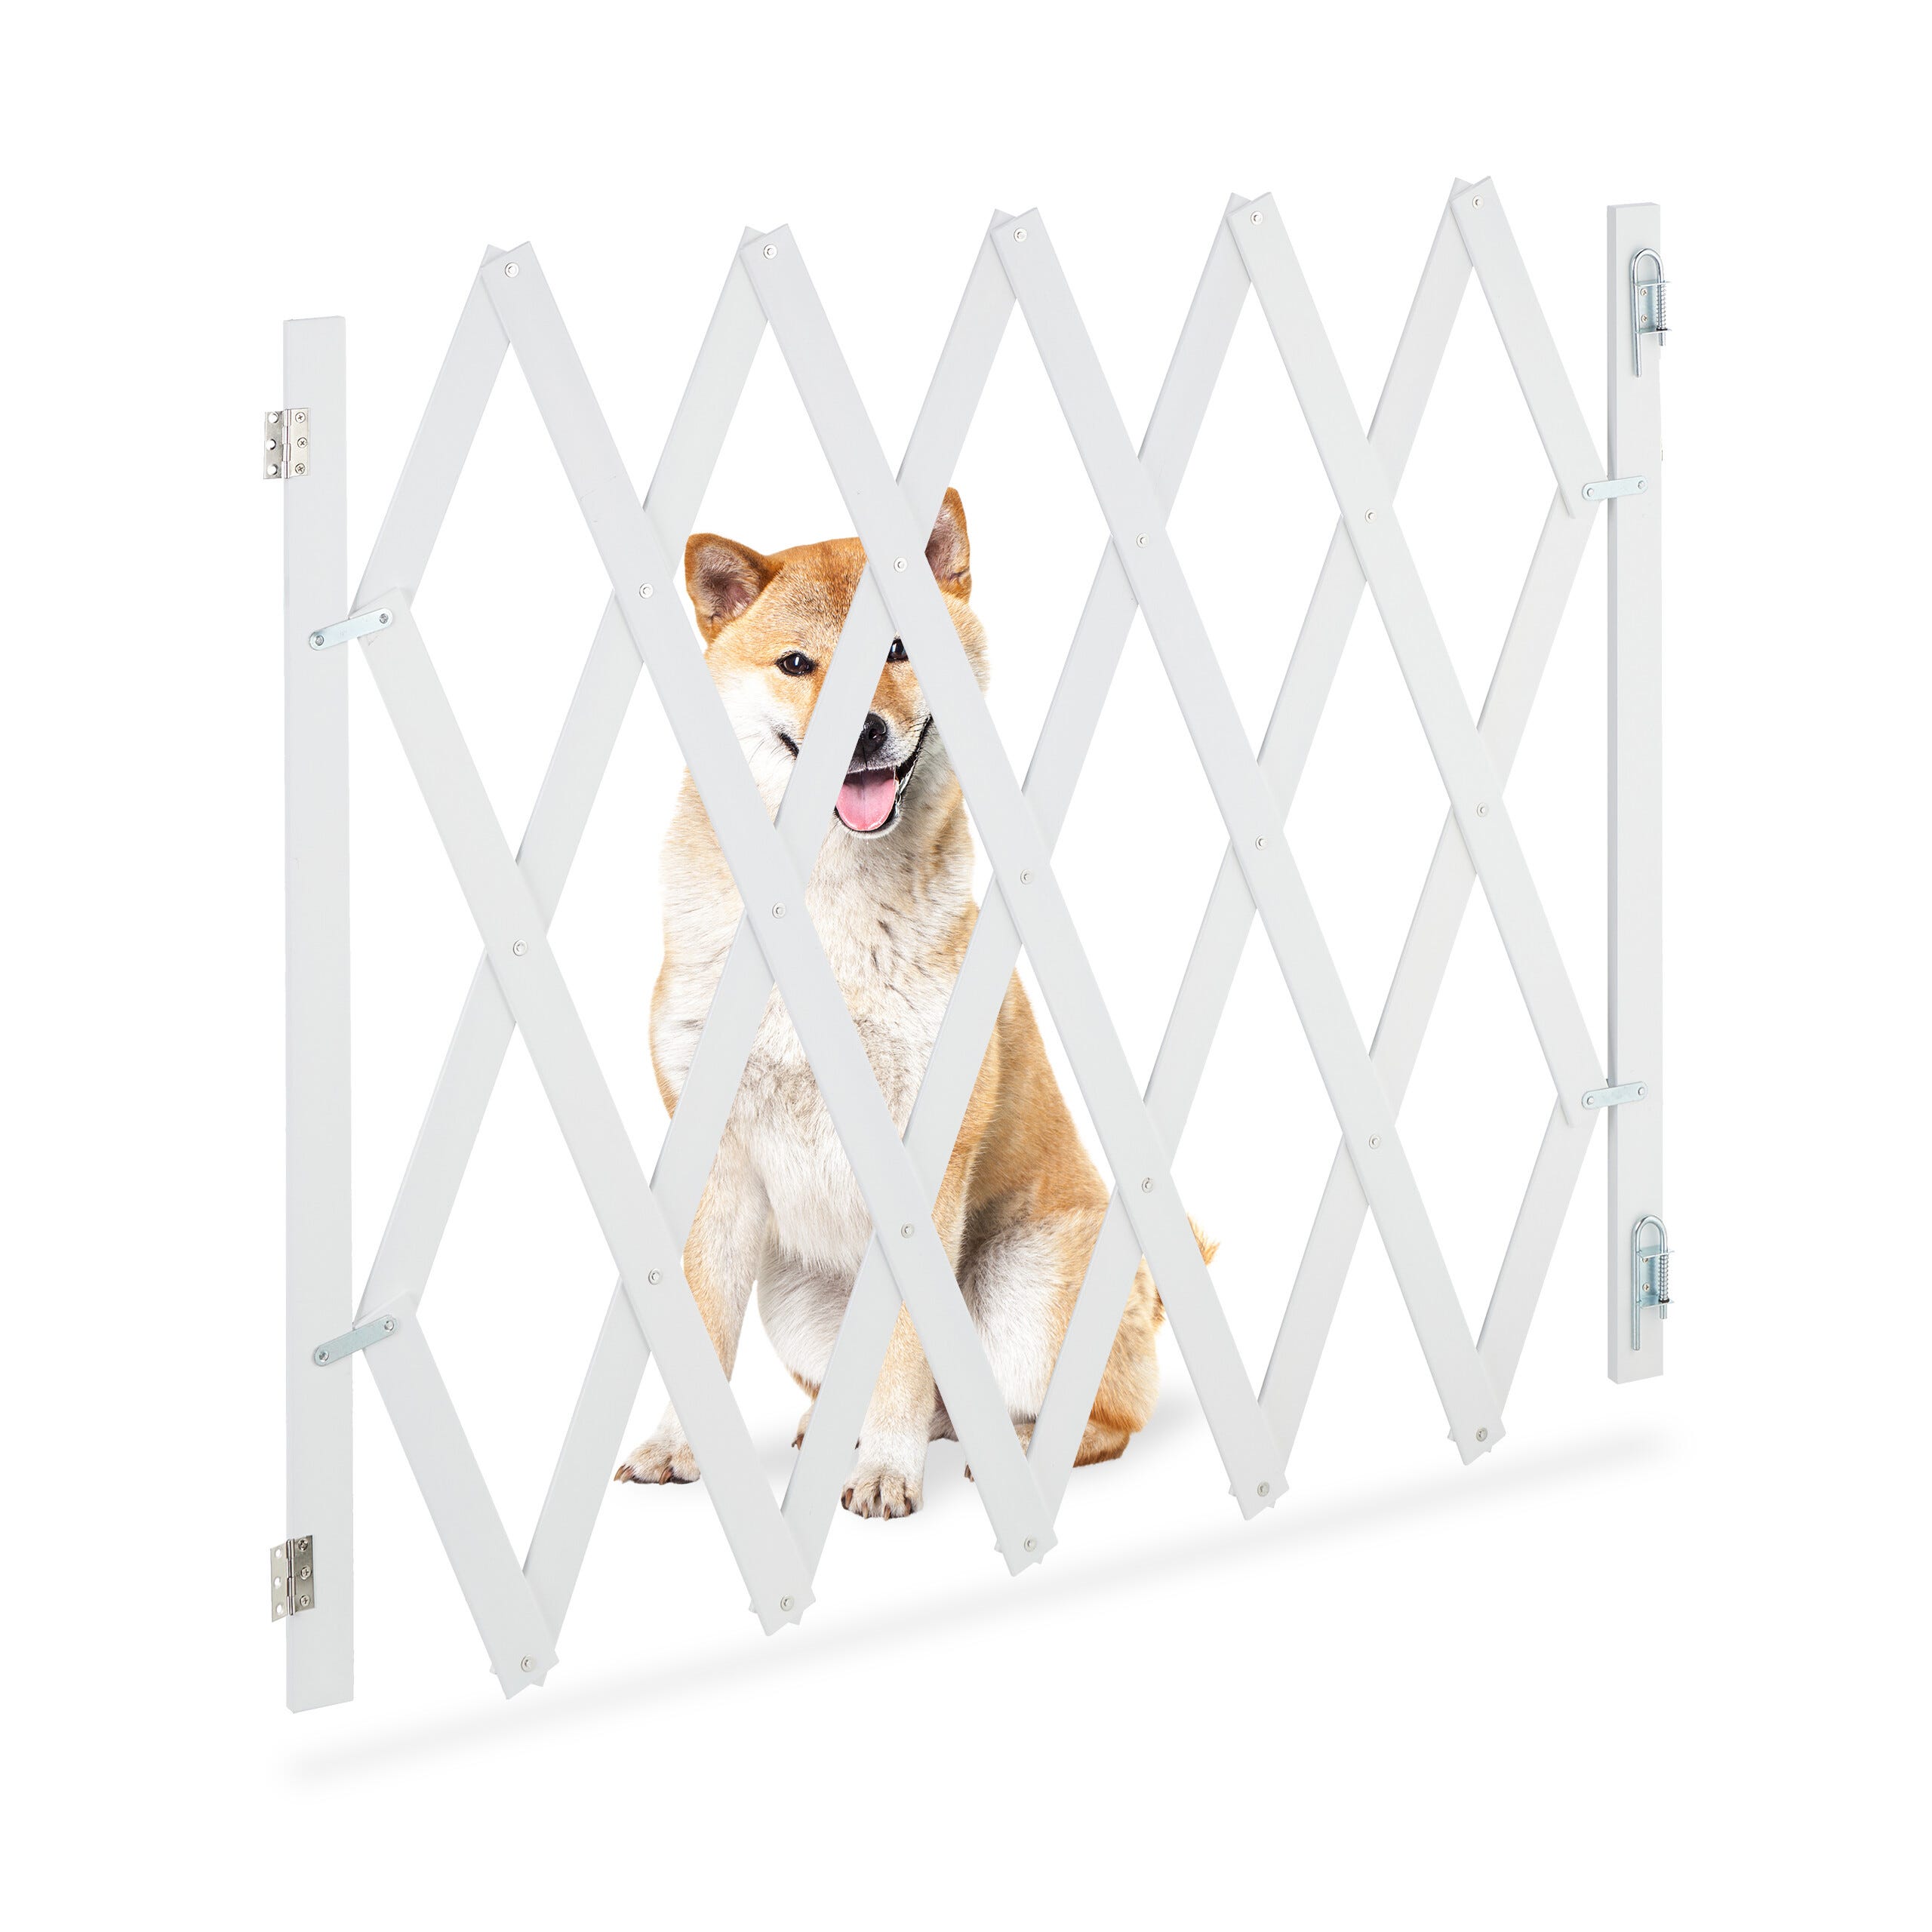 Barriere de securite porte et escalier 75-84cm blanc pour animaux